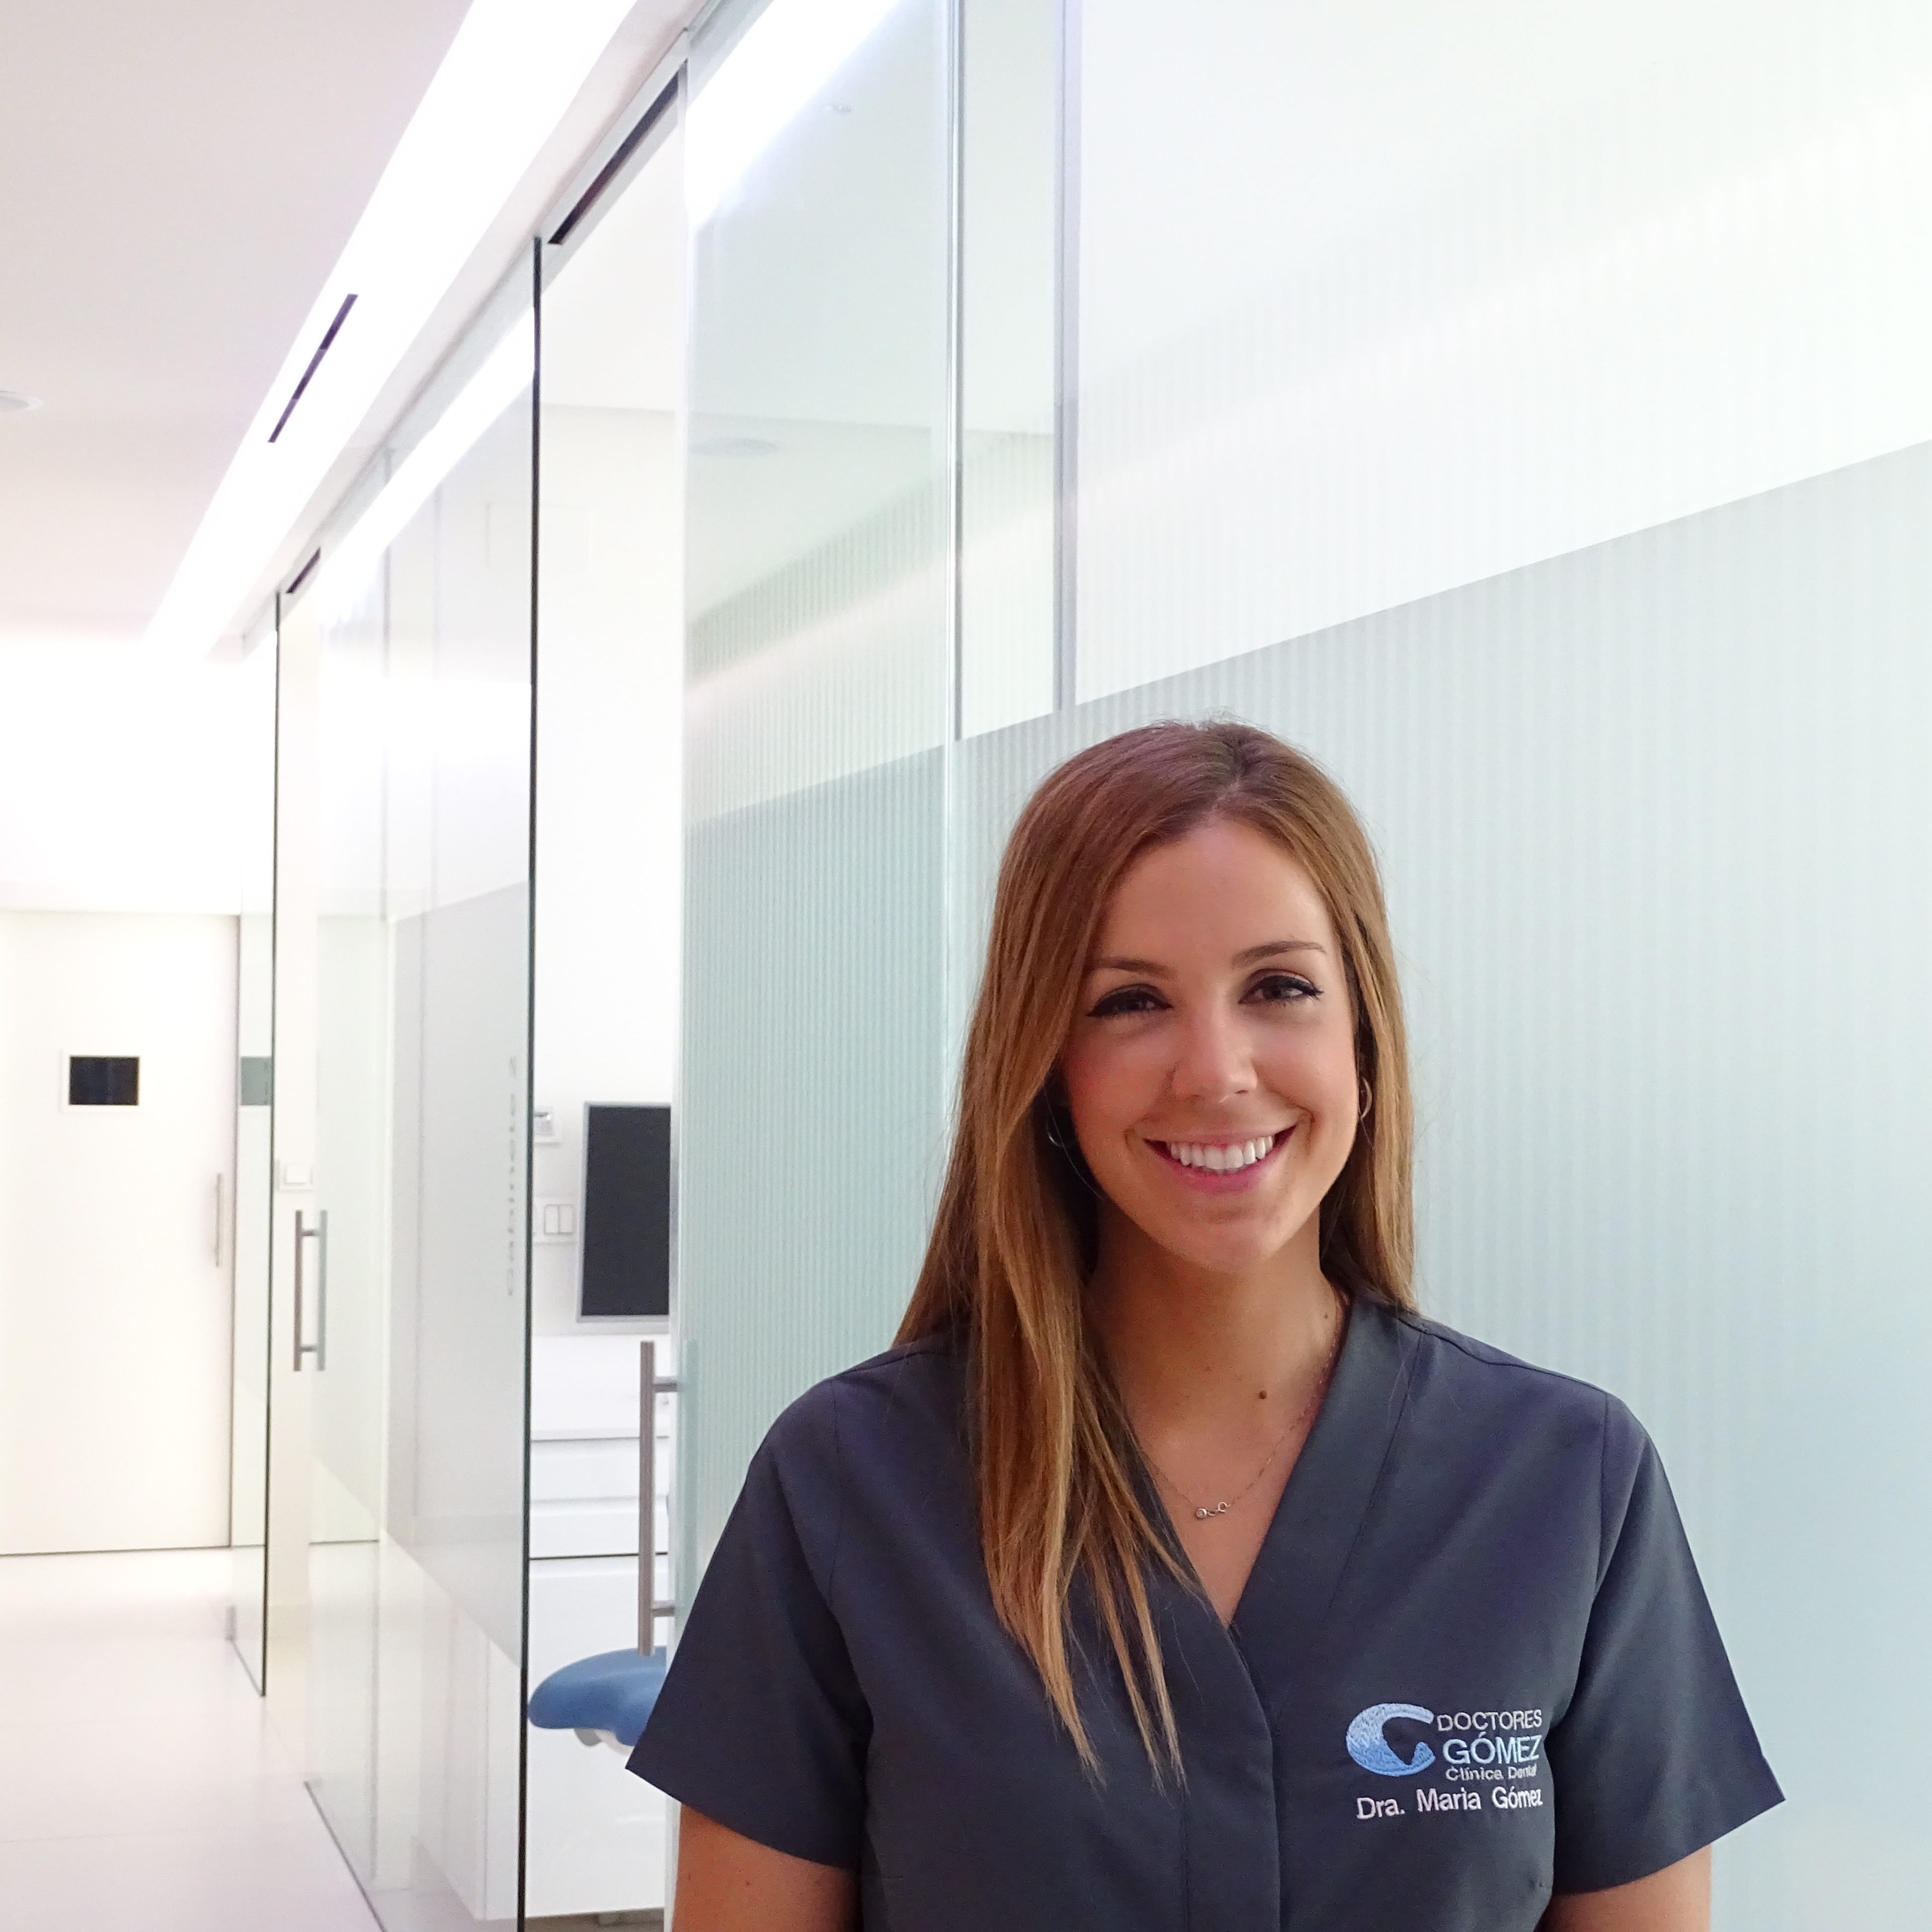 Dra. María Gómez Valverde | Clínica Dental Doctores Gómez